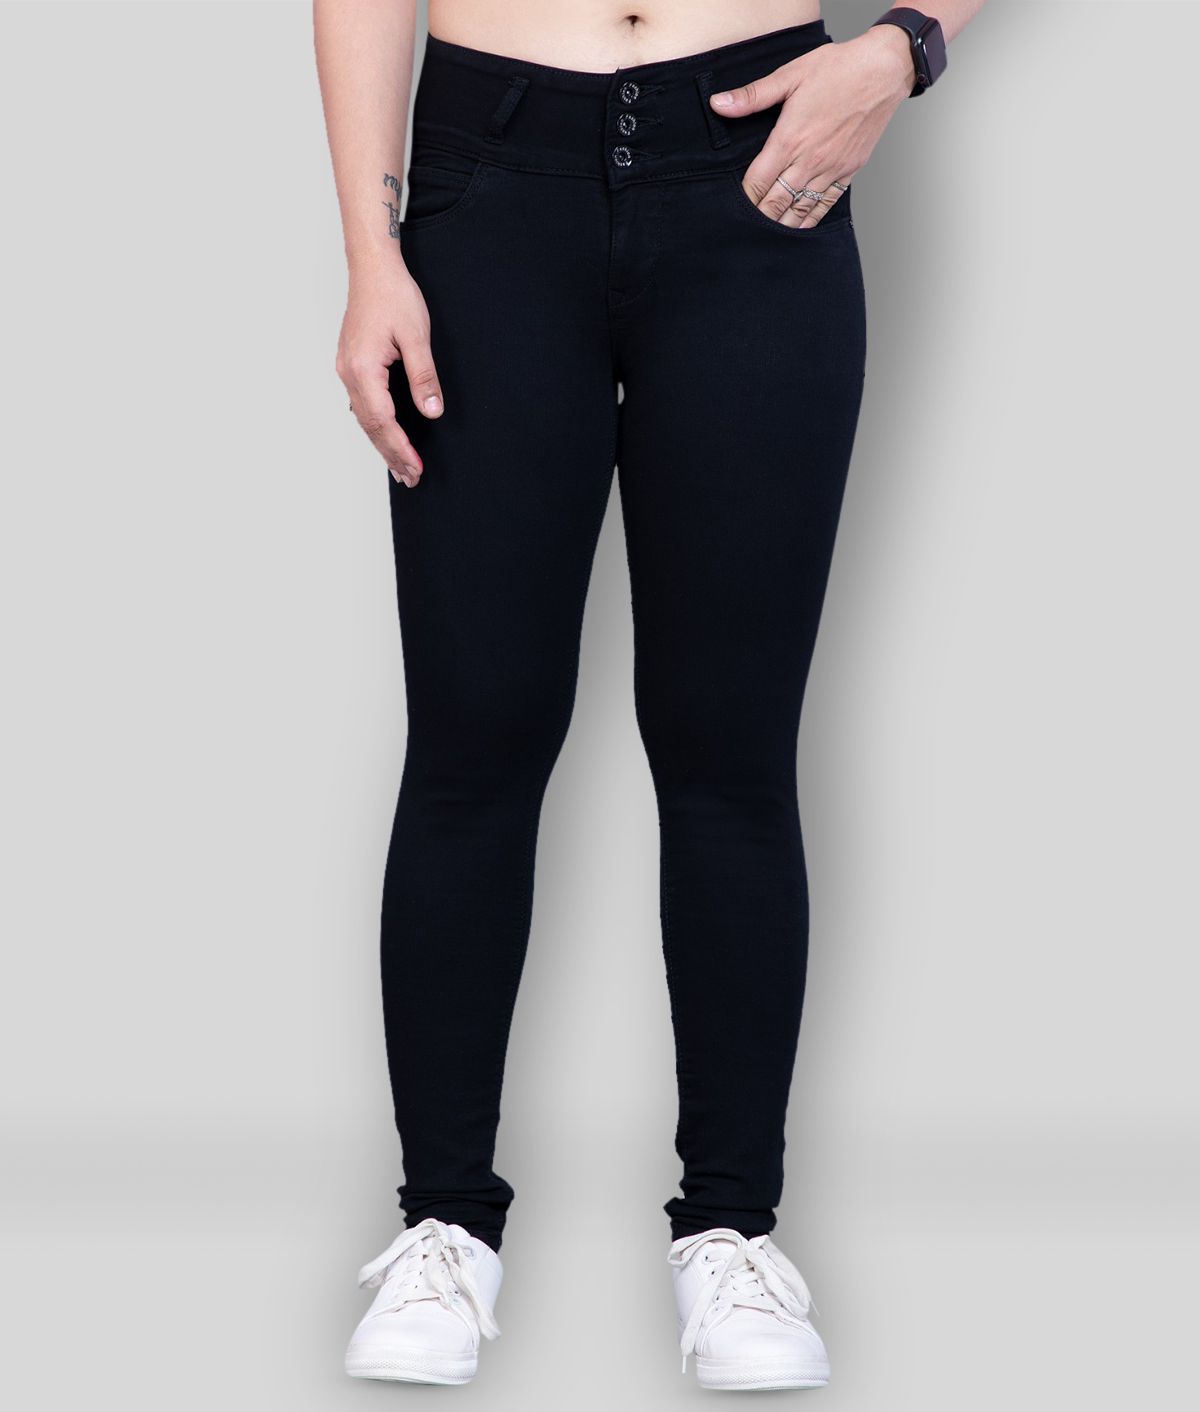     			Rea-lize - Black Cotton Blend Women's Jeans ( Pack of 1 )